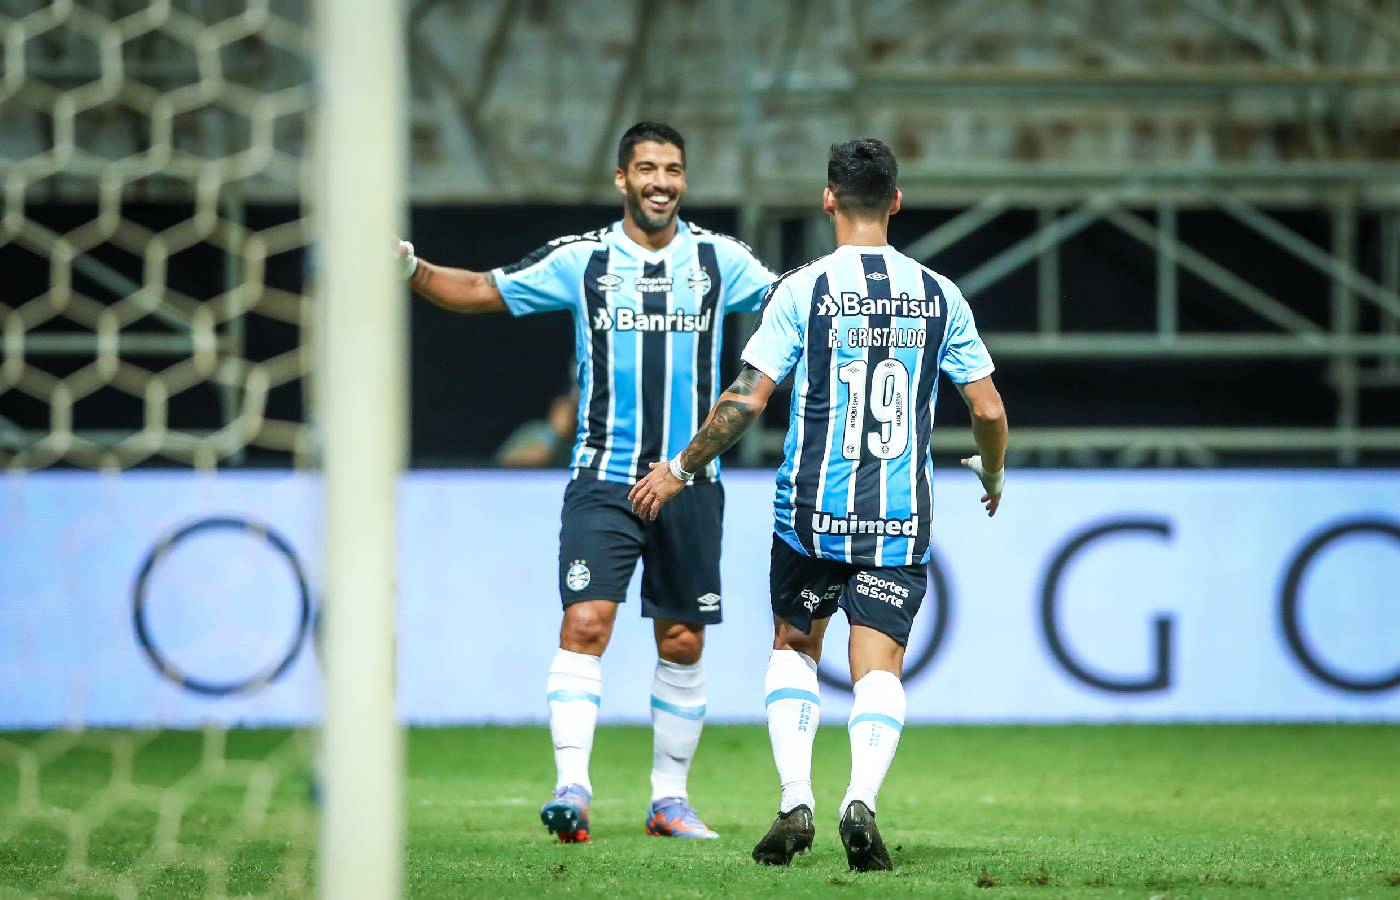 Grêmio anuncia novo patrocinador para 2023; veja valor do contrato com  Esportes da Sorte